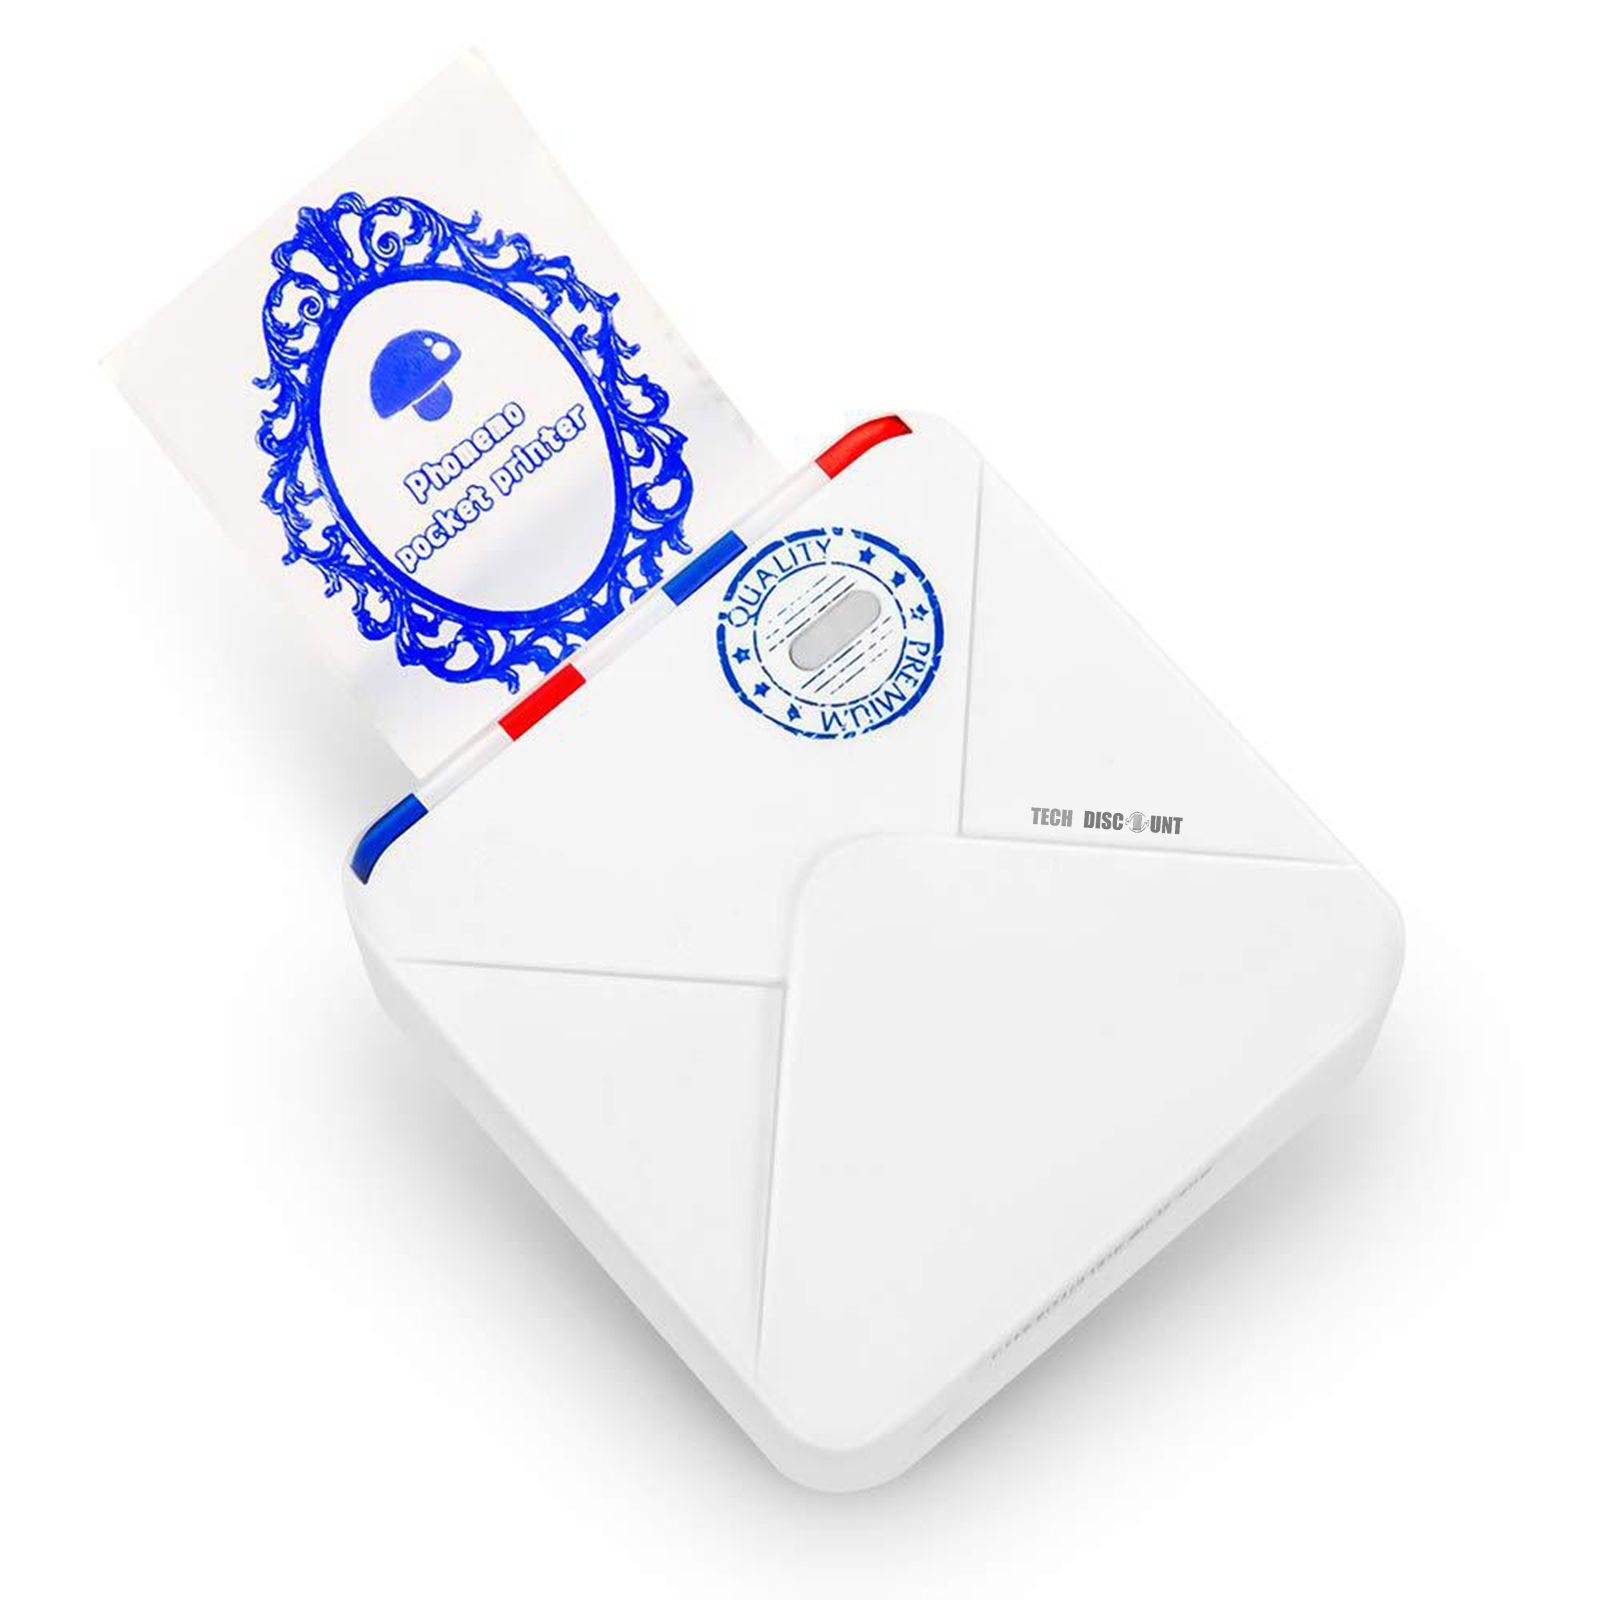 Imprimante thermique portable Phomemo M02S, imprimante de poche sans fil HD  300 dpi, impression de papiers de 3 tailles, compatible avec iOS 